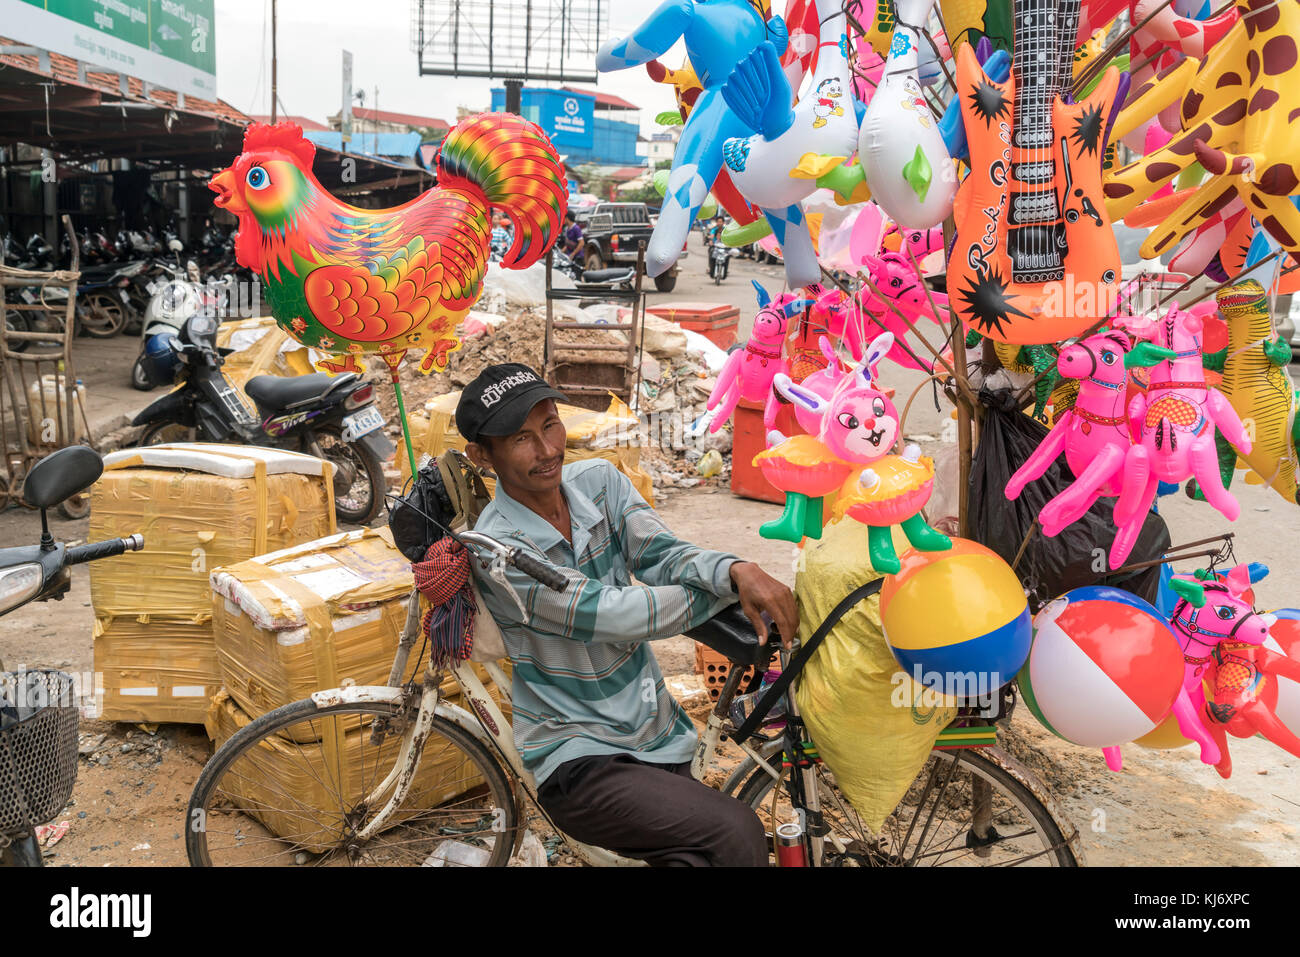 Luftballonverkäufer mit Fahrrad in Kampot, Kambodscha, Asien  | man selling ballons on his bike  in Kampot, Cambodia, Asia Stock Photo